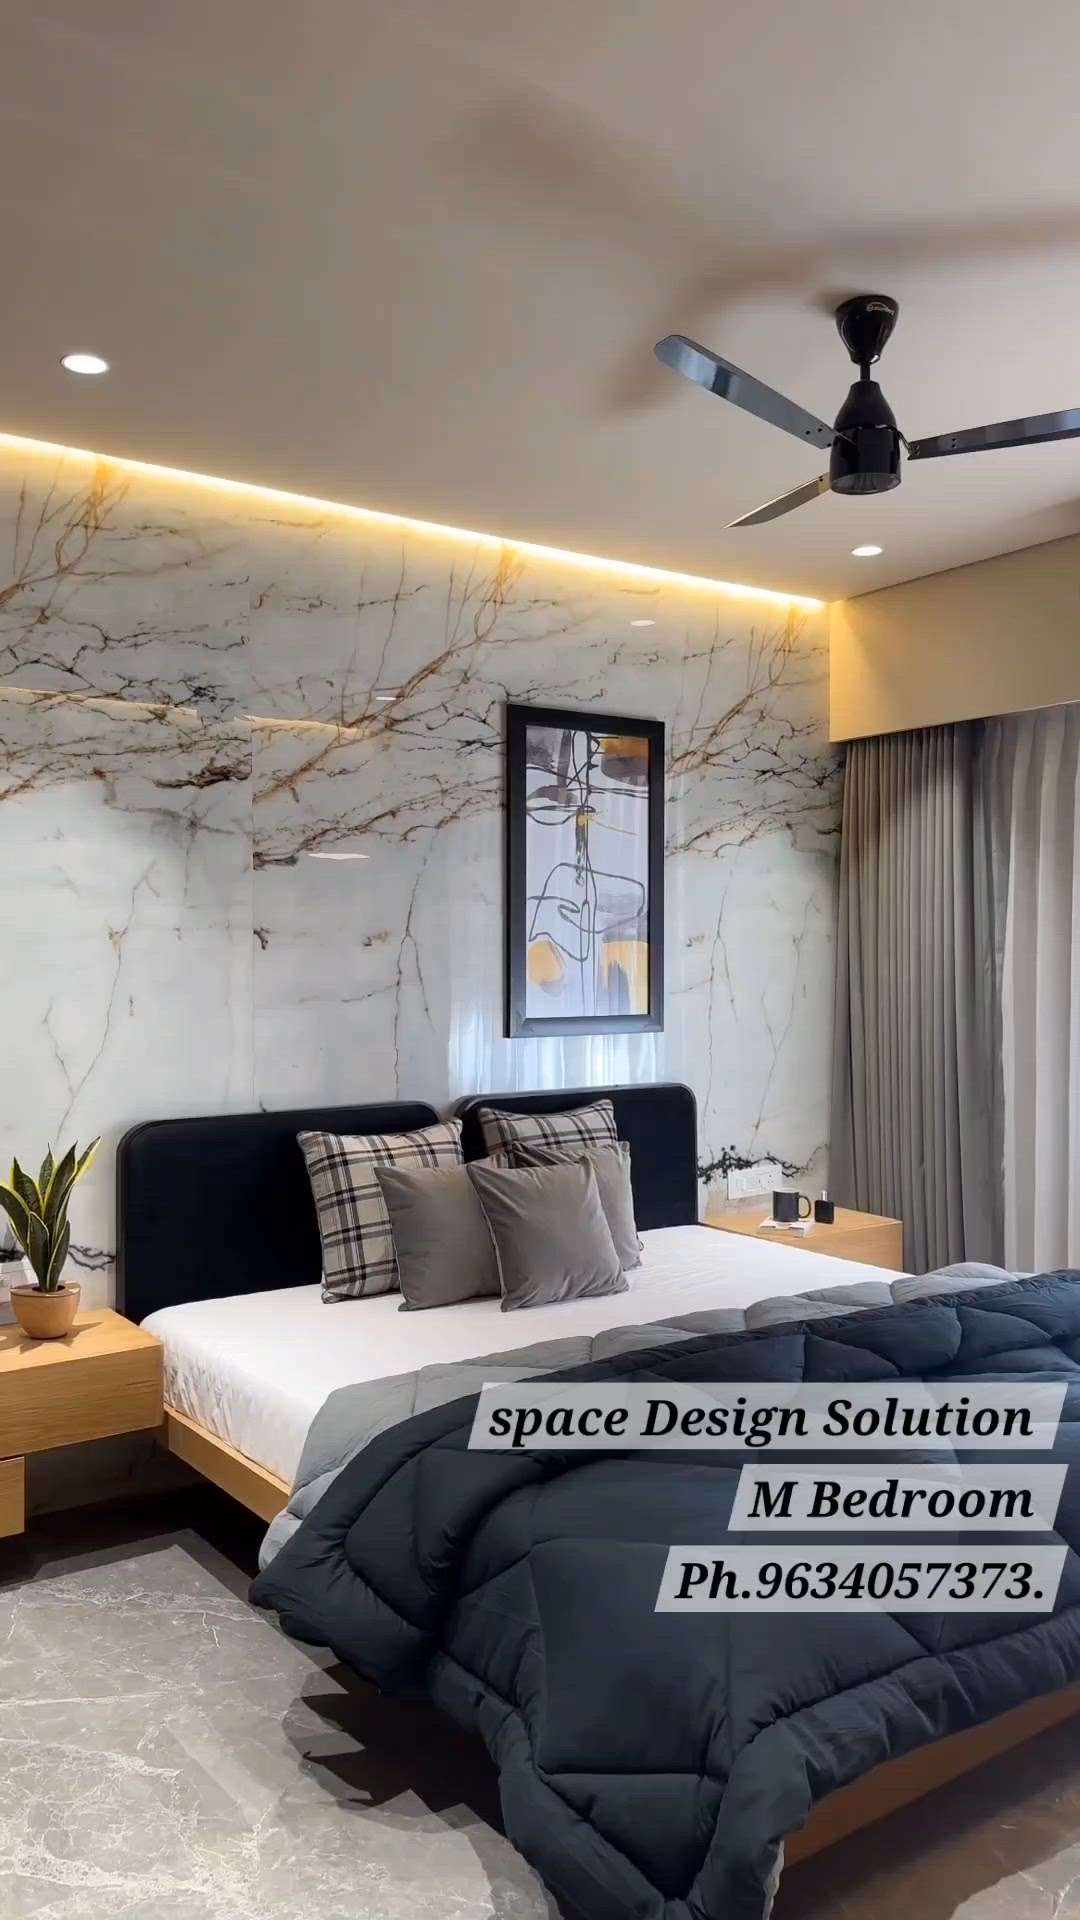 #luxurybedroom# #luxuryinteriors  #interior #designer #architect #architecturaldesign
#space DesignSolution_interiors
https://spacedesignsolution.com/